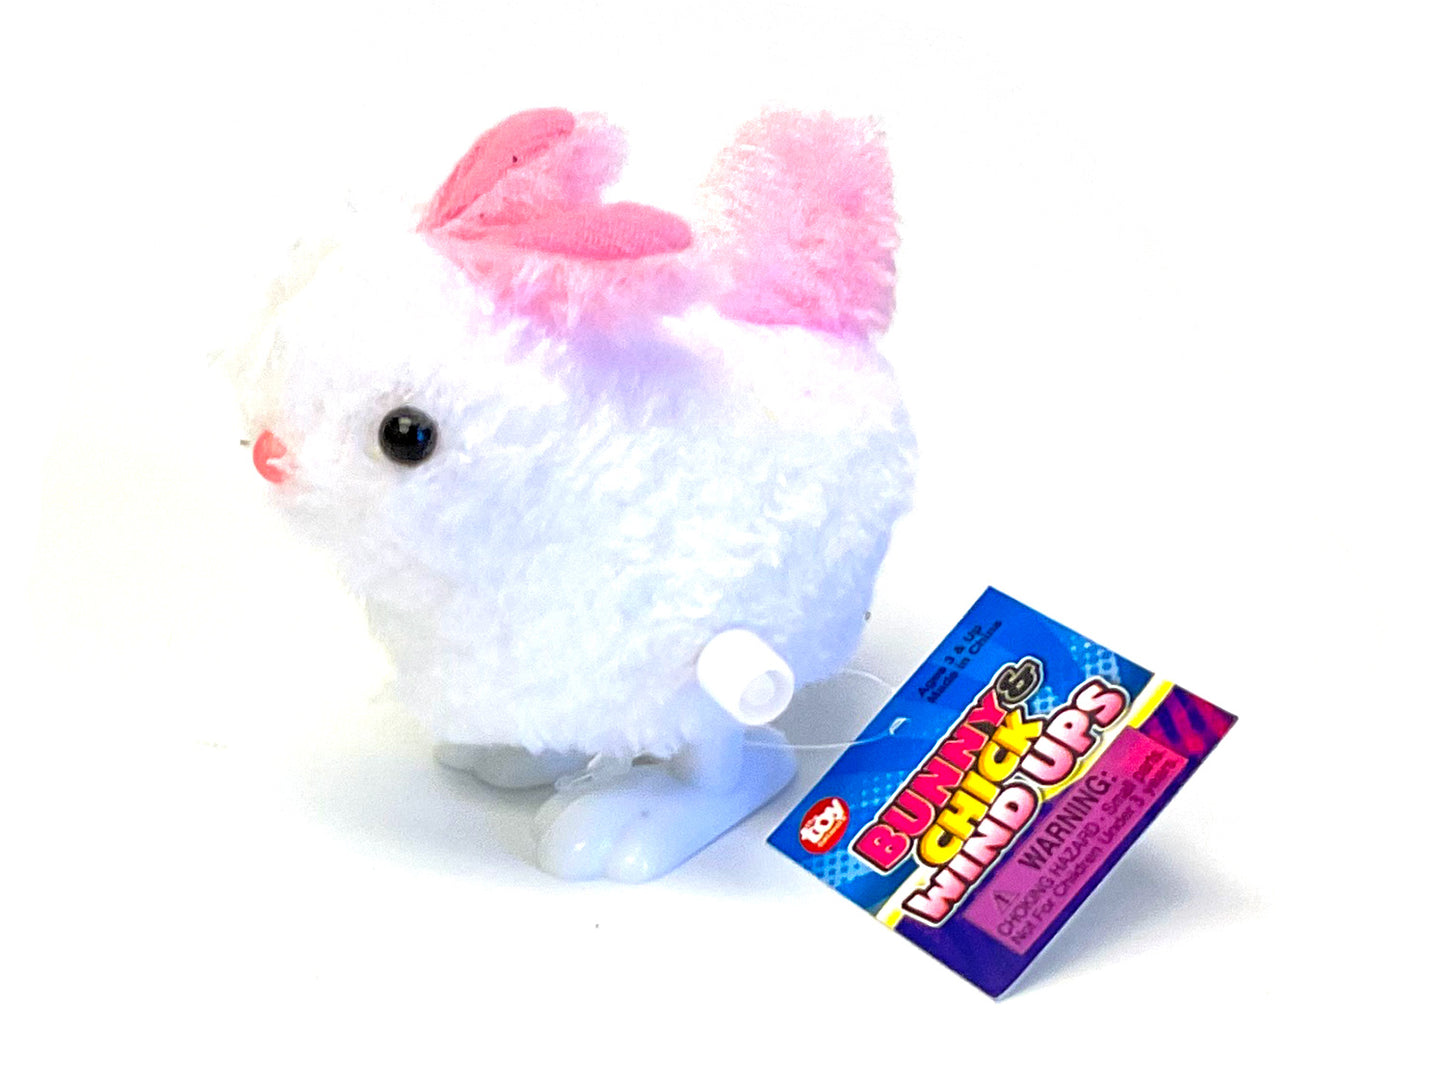 Fuzzy Bunny Wind-Up Toy